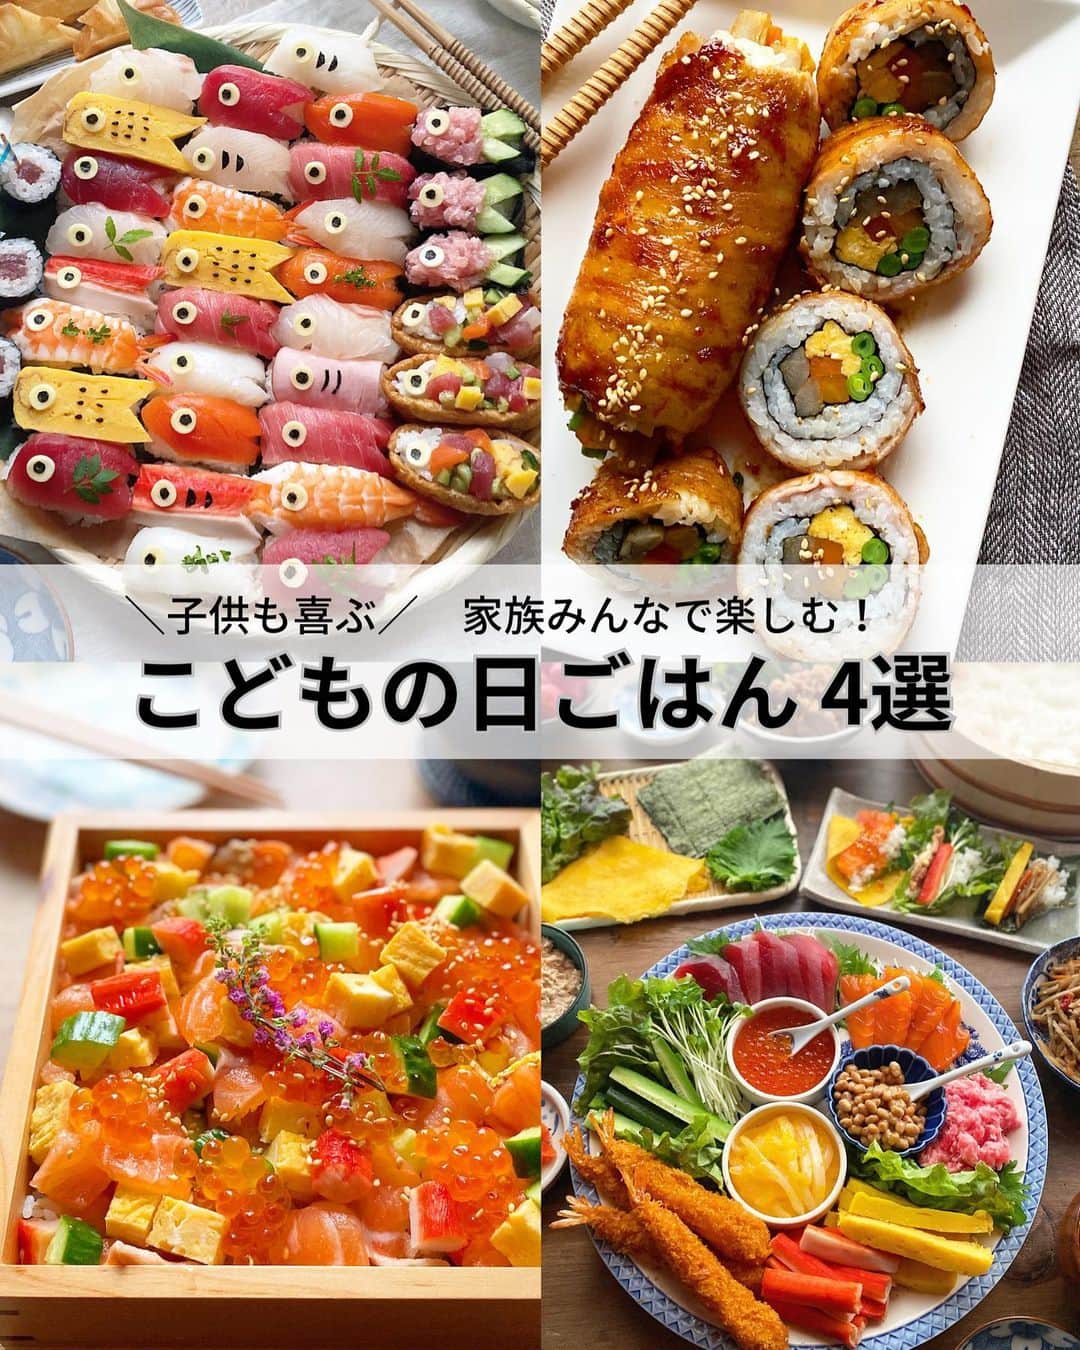 るみのインスタグラム：「・ 今日のレシピ🎏  ＼子供も喜ぶ！家族みんなで楽しむ！／ 『こどもの日ごはん』  いよいよ！明日はこどもの日…🎏 皆さんメニューは決まりましたか？ まだ迷っている方がみえたら参考にしてみてくださいね。  まだ間に合う！簡単お寿司です。 こいのぼり寿司・巻き寿司・ちらし寿司・手巻き寿司  我が家も子供達が小さかった頃は色々作ってました。 もう大きくなった子供達ですが、久しぶりに揃うGWなので明日は手巻き寿司でも用意しようかなと思ってます。  …………………………………………………… 【子供と一緒に楽しむ！こどもの日寿司(簡単な作り方)】  (材料) 酢飯…適量 お刺身セット…お好みのもの適量 市販のいなりあげ…適量 スライスチーズ・焼きのりなど…適量  (作り方) ❶お刺身セットのネタを鯉のぼりの形になるように切り込みを入れる。切り取った方の具材は細かくして一緒にまとめておく。 ※きゅうり(分量外)を少量加えています。 ❷刺身サイズくらいの製氷皿を用する。製氷皿の長さの倍くらいのラップを用意して穴を作りながらラップを敷く。 ❸2に酢飯を詰める。 ❹3の上にラップを被せ、形よくなるように上からかるく押さえる。 ❺まな板の上に容器が上になるように置く。 ❻ラップごとひき出して容器を外す。 ❼ラップをはずして、1のネタをのせる。 ❽器に7を並べ、スライスチーズ・きのりなどで目玉や鱗などを作り好きなようにトッピングしていく。1の細かく刻んだネタも市販のいなりあげに入れてトッピングする。または軍艦にしても◎  (ポイント) ●お刺身はお好みのものでどうぞ。 ●製氷皿にご飯を入れる際はスプーンなどを使用し、ご飯に触る際は手を少し湿らせておきながら作ると手にくっつきにくく作りやすいです。  ……………………………………………………… 【子供も喜ぶ！肉巻き寿司】  (材料) ごぼう…約30g にんじん…約30g いんげん…6本 たまご焼き…適量 A  水…100ml A  麺つゆ(3倍濃縮)…小さじ2 温かいごはん…150g すし酢…大さじ1 焼き海苔…1枚 豚バラ薄切り肉…4枚 サラダ油…小さじ1/2 焼き肉のたれ…大さじ2 白いりごま…適量  (作り方) ❶ごぼうとにんじんは焼き海苔の長さに切り5〜8㎜角の棒状に切る。 いんげんはへたとすじをとる。 鍋にA、ごぼう、にんじん、いんげんを入れ落とし蓋をし4〜5分煮て(柔らかくなるまで)、そのままの状態にし粗熱をとる。 野菜を煮ている間に、温かいごはんにすし酢を混ぜ合わせ冷ましておく。 ❷ラップをしき、縦半分に切った焼き海苔をのせ、酢飯を半量のせて平に広げる。 その上からラップをかぶせる。 ❸クルッと上下を返し、海苔側のラップを外し、手前の方にごぼう、にんじん、いんげん、たまご焼きをのせる。 ❹具材を手でかるく押さえながら巻き始め、最後までクルクル巻いていく。 ❺もう半分の焼き海苔も同じように作り、その周りに豚バラ薄切り肉を巻きつける。 ❻フライパンにサラダ油を中火で熱し、巻き終わりを下にして焼き始め、転がしながら全体を焼き、最後余分な油はペーパーで拭き取る。 ❼弱火にし、焼き肉のたれを加え転がしながら全体に絡めたら出来上がり。 ❽食べやすい大きさに切り、白いりごまをふりかける。  (ポイント) ●今回はお手軽に作れ、巻きやすくするため焼き海苔を半分に切り作りましたが、そのまま1枚でお作りいただいてもOKです。  …………………………………………………… 【簡単！華やかちらし寿司／大葉酢飯・華やかに盛り付けるコツあり】  (材料) 温かいごはん(固めに炊いたもの)…2合分 A  酢…大さじ3 A  砂糖…大さじ2 A  塩…小さじ1 大葉…4〜5枚 白いりごま…小さじ2 サーモン(刺身用)…適量 たまご焼き…適量(卵2個で作ったたまご焼き使用) カニカマ…5本 胡瓜…1/2本 いくら(お好みで)…適量  (作り方) ❶Aを混ぜ合わせ、温かいごはん(固めに炊いたもの)に回しかけ、すばやく切るように混ぜ合わせる。 その後、細かく刻んだ大葉、白いりごまを加え全体に混ぜ合わせる。 ❷サーモン(刺身用)、たまご焼き、カニカマ、胡瓜は1㎝角くらいに切る。 ※大きさを揃えると綺麗です。 ❸器に1の大葉酢飯を盛り、2の具材を2/3ずつ適当にバラバラにちらす。 ※この時は見栄えを気にしなくてもよいです。 ❹残りの具材1/3をバランスをみながらちらす。 ※隙間を埋める感じにふわっと上にのせる感じに盛る。 ❺いくら(お好みで)をちらす。 仕上げに白いりごまをちらしても◎！ ※ごまをちらすと見た目のアクセントにもなりますし美味しいです。  (ポイント) ●具材をみんな同じくらいのサイズにカットしましょう。また、切った時の食材の分量を同じくらいに揃えておくと良いです。 ●並べる時のちょっとした私のポイント！ 2/3の食材をバラバラにざっくり並べる。 残り1/3の食材をバランスをみて上に並べていく。 ※色合いを散らすと綺麗になります。 ●ご飯が隠れるくらいの具材を用意すると見た目華やかで綺麗に仕上がります。  ◇レシピの検索、保存は、 レシピサイト @recipe.nadia からできます。」